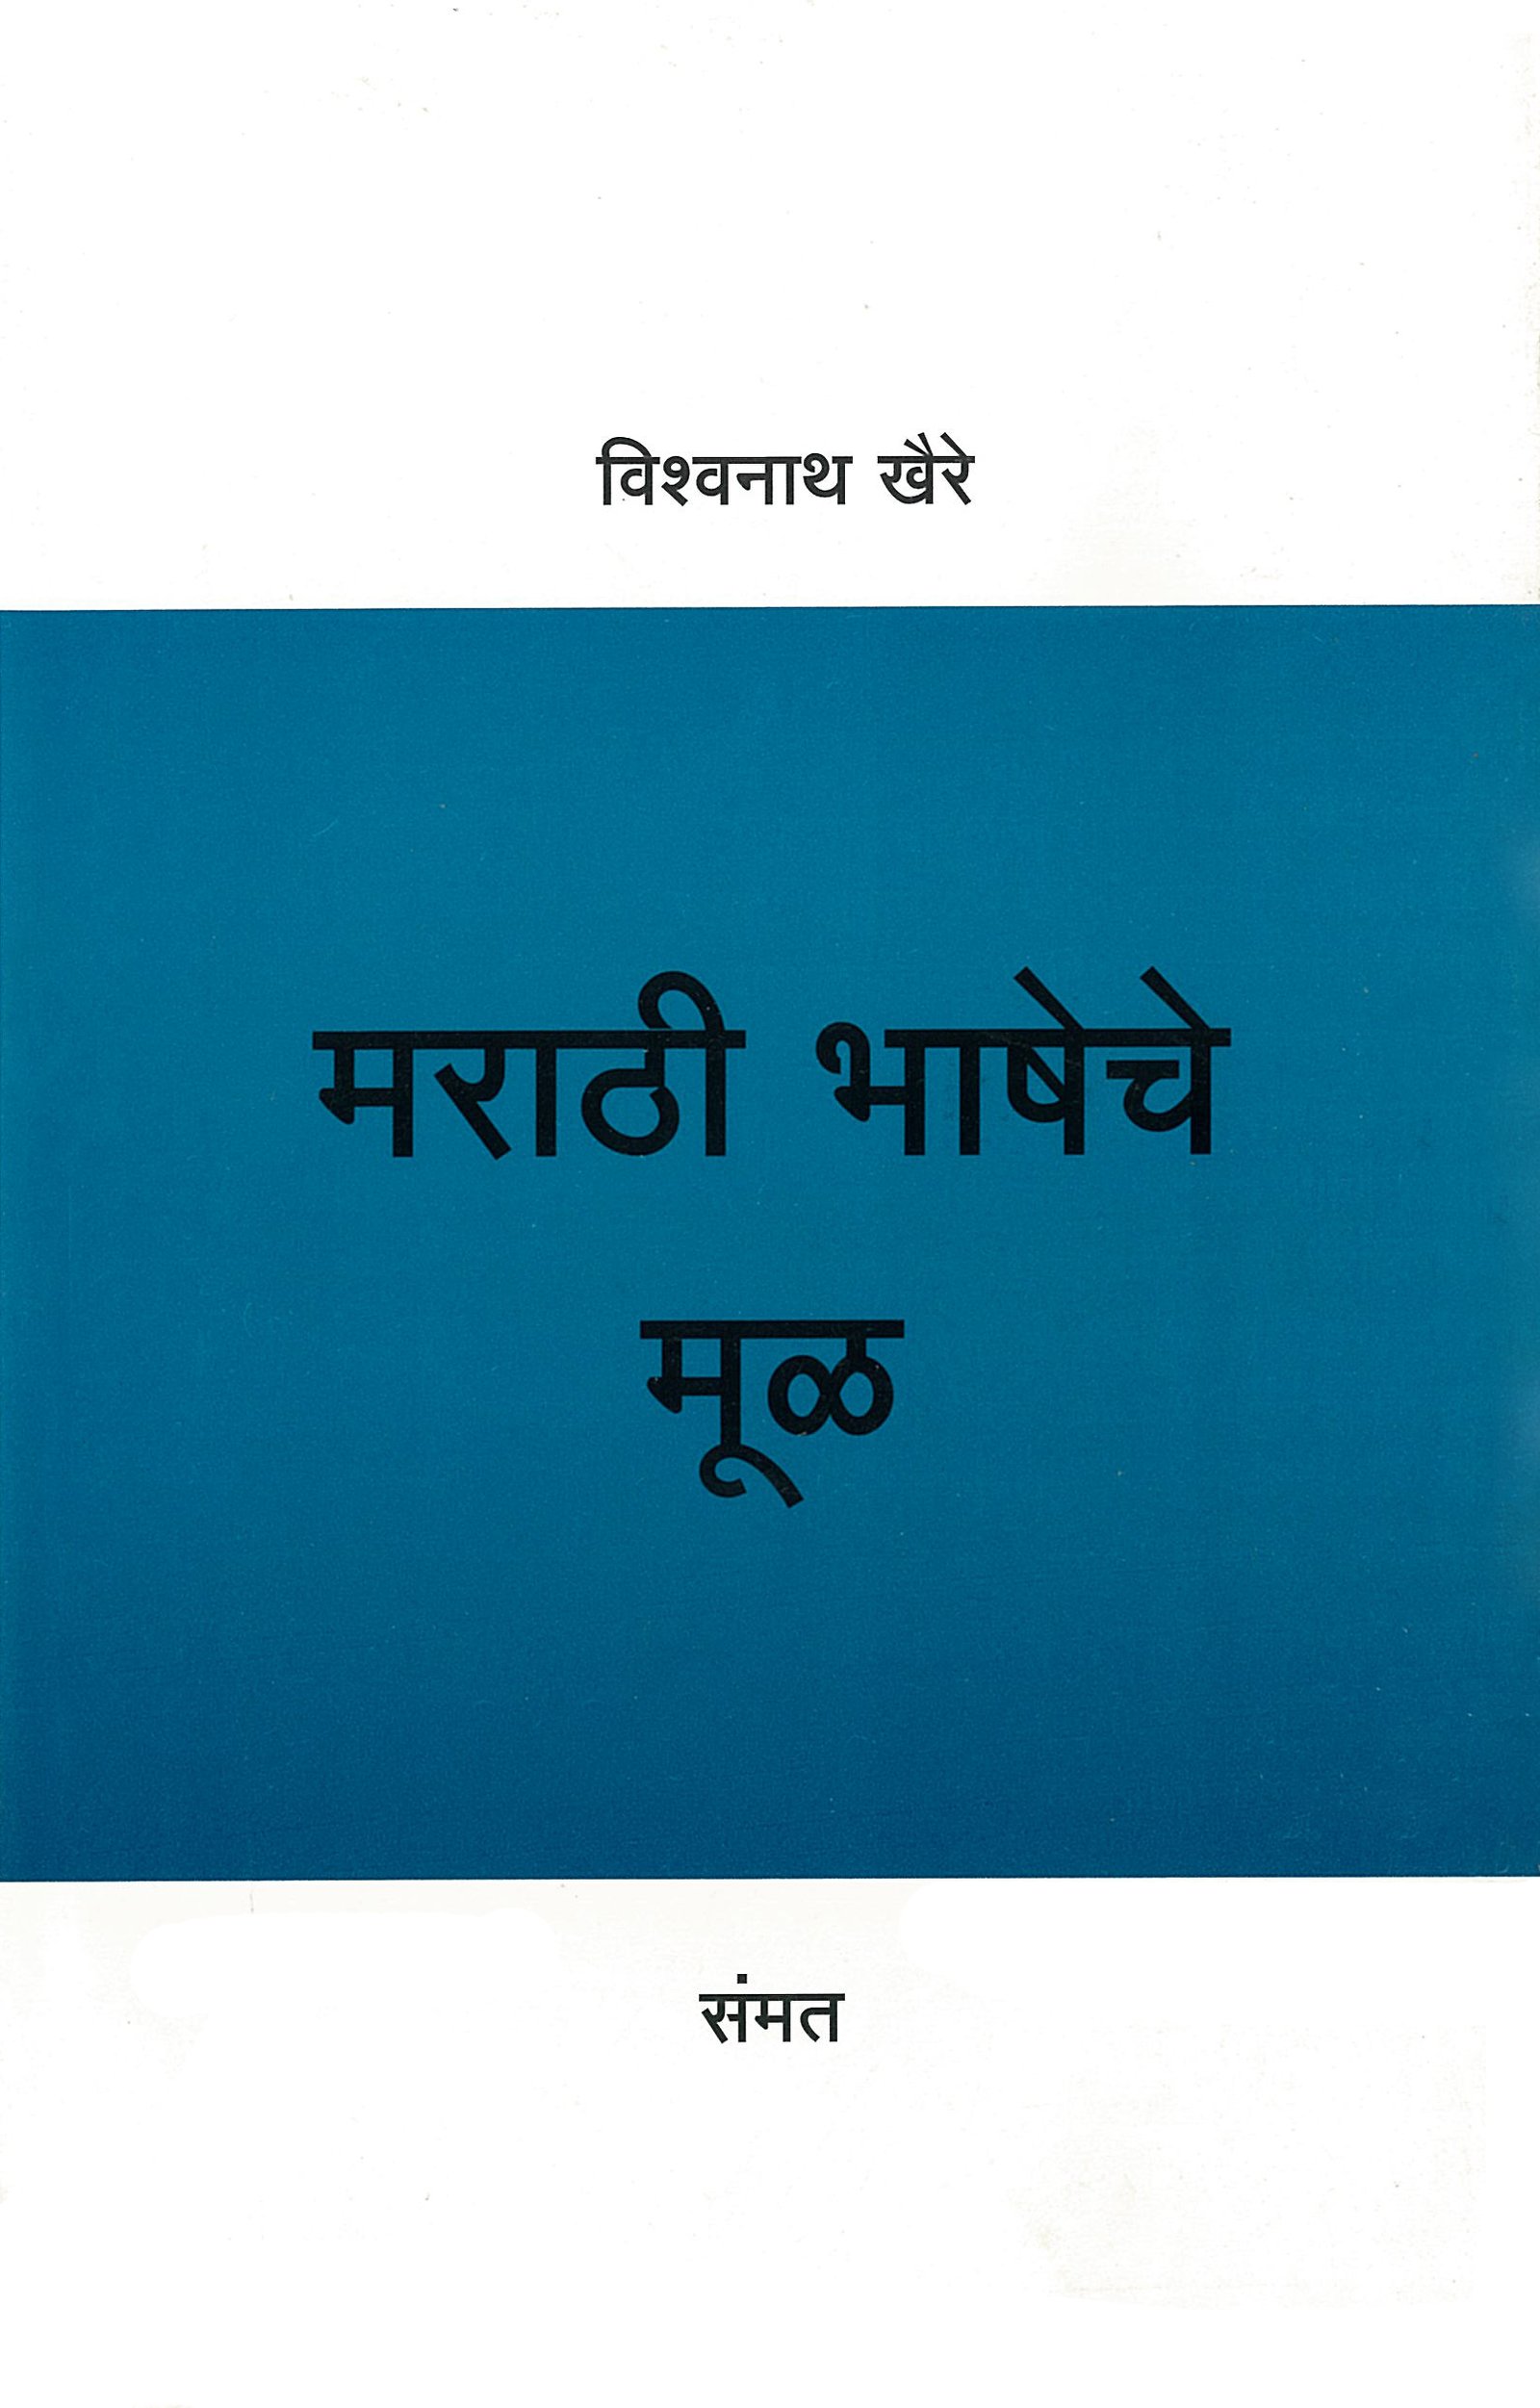 Marathi Bhasheche mul